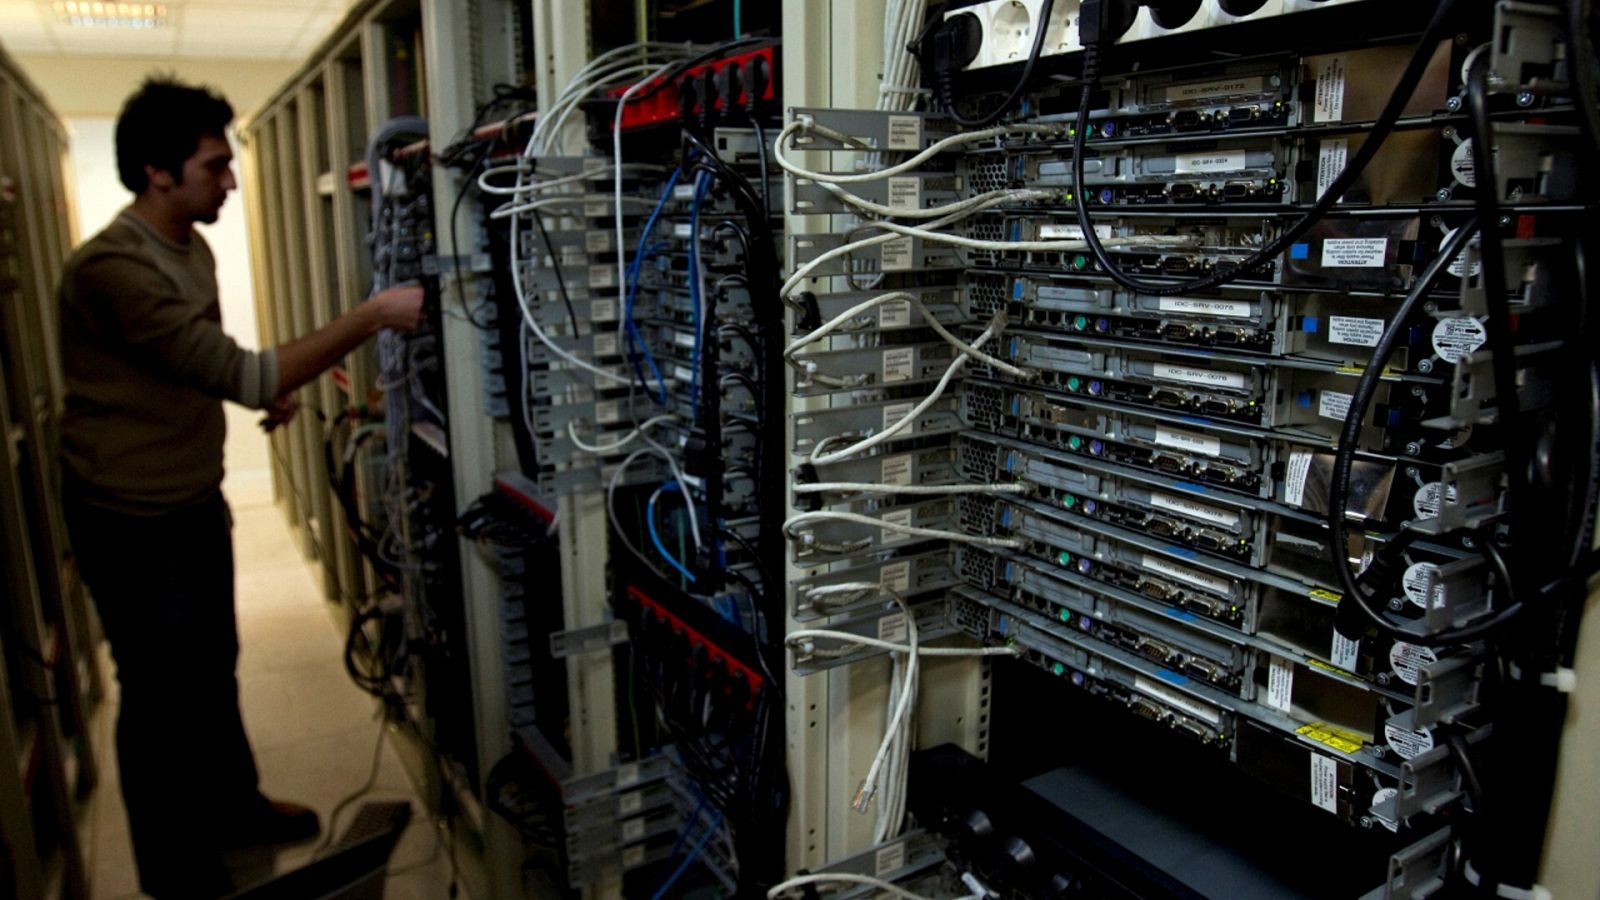 Imagen de archivo de un informático revisando el equipo en un proveedor de servicios de Internet en Teherán, Irán.